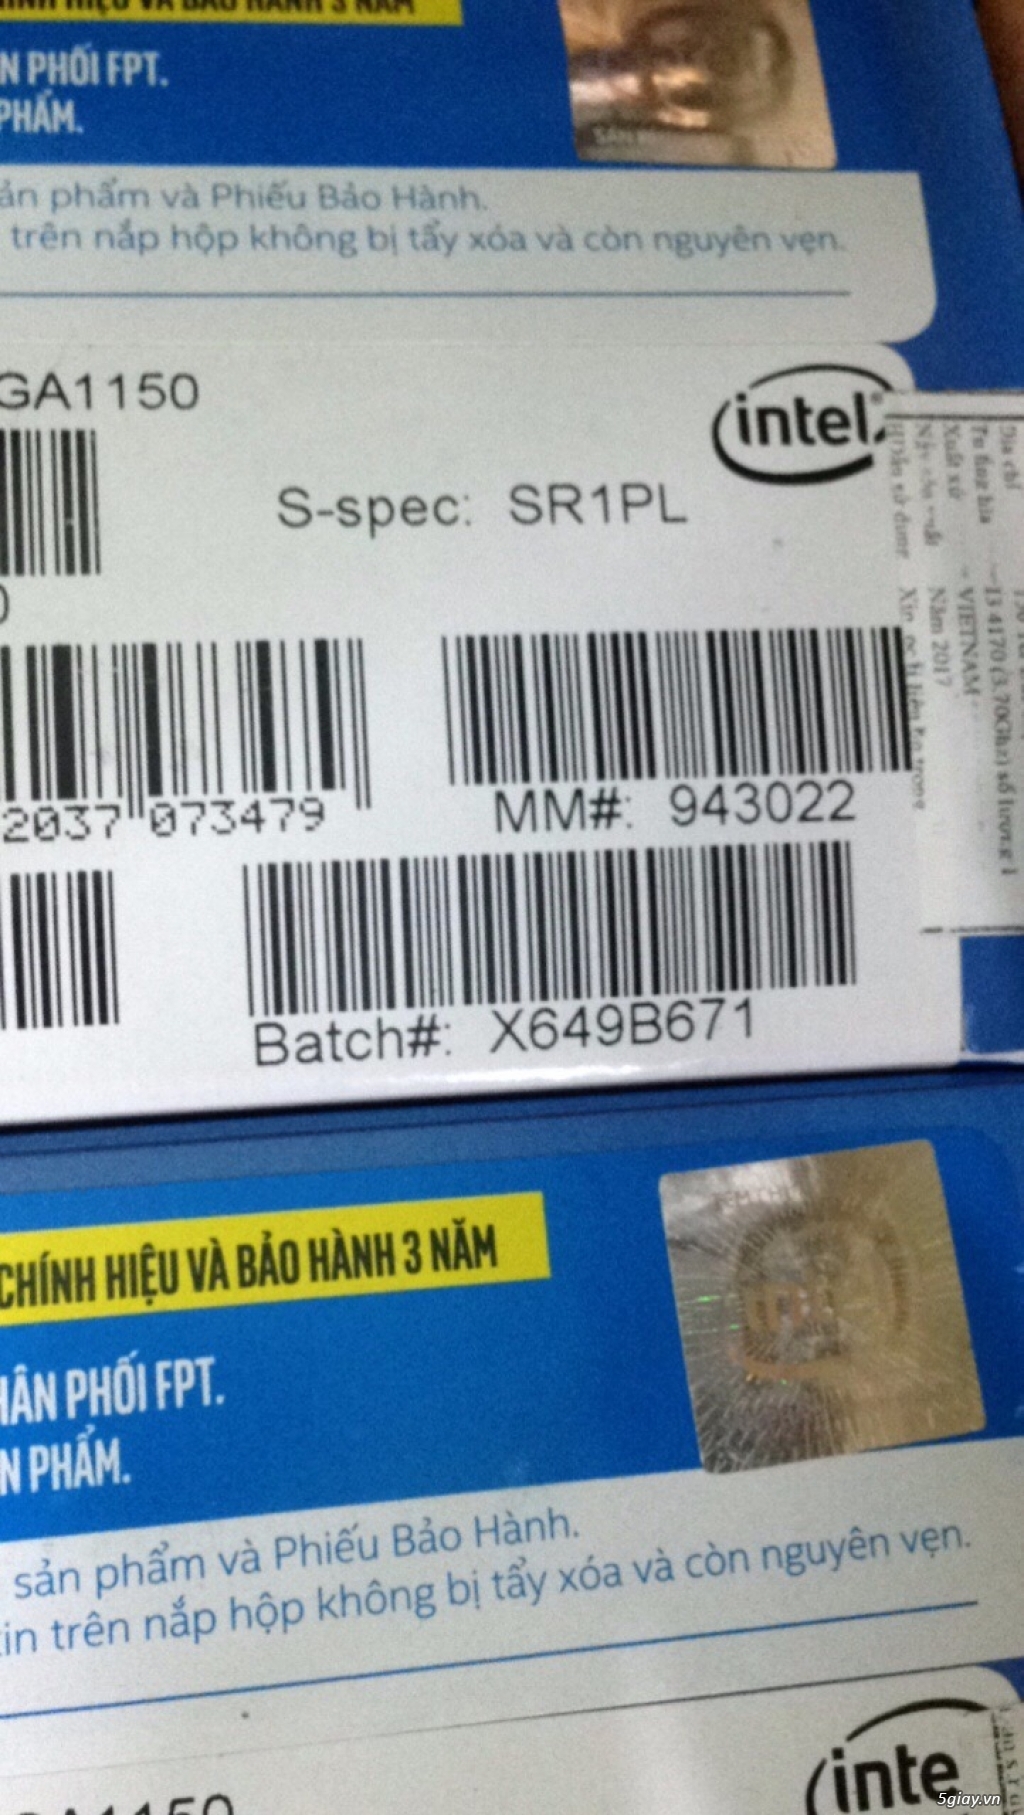 Chip intel i3 6100 +i3 4170 + maingiga h110 mới keng chưa xài bh3 năm